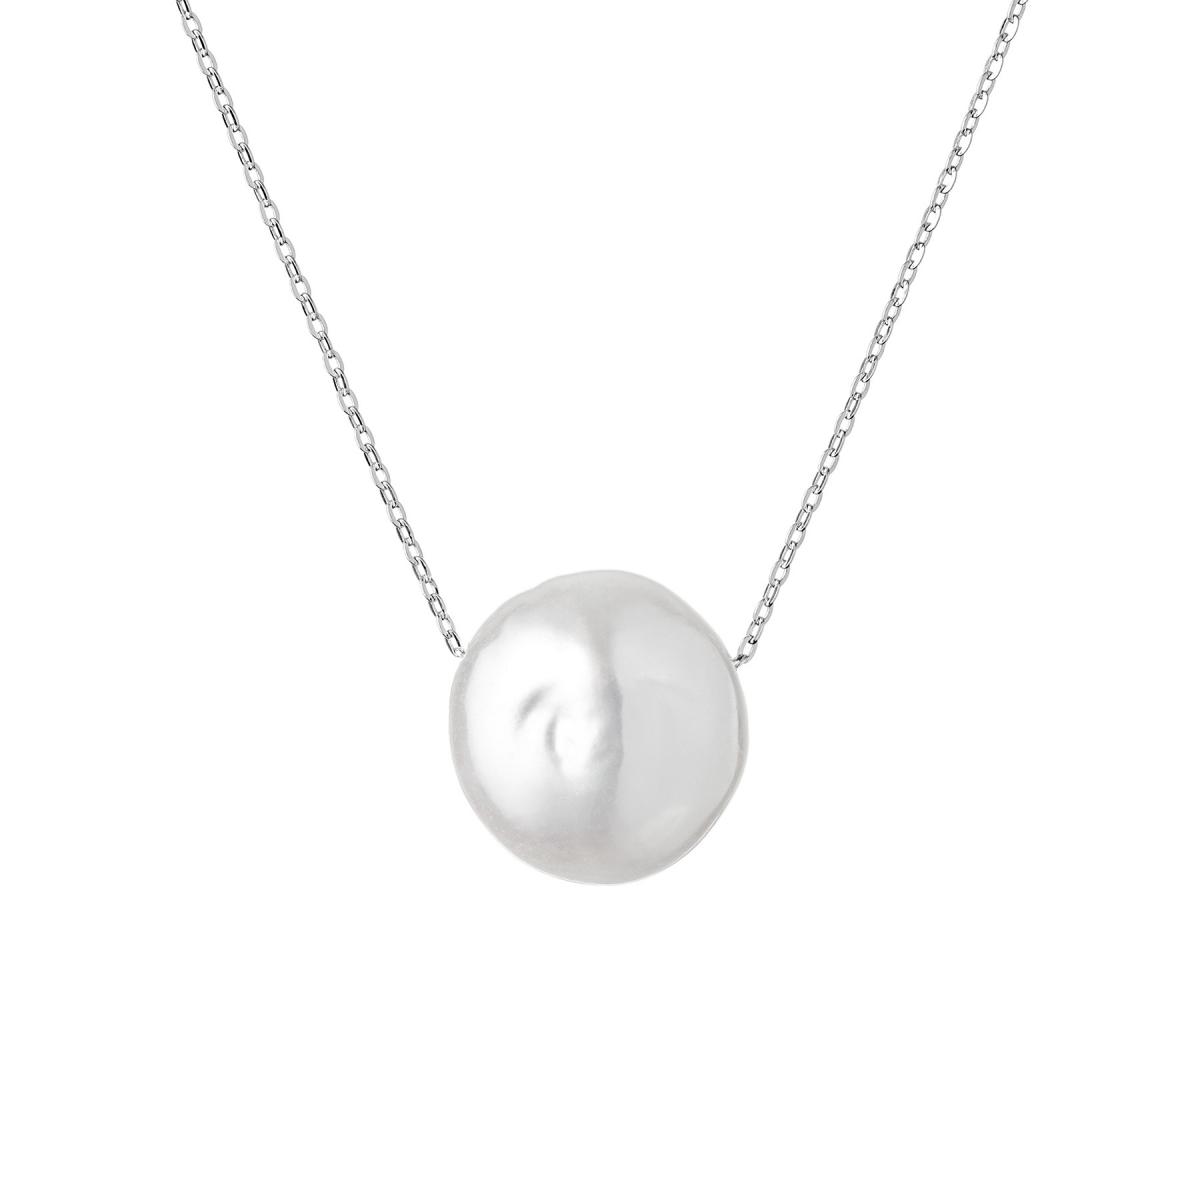 NEMOKAMAS PRISTATYMAS minimalistinsi pervertas tikras perlas su sidabrine grandinele is naturalus perlo simboline nebrangi dovana kaledoms  gimtadien jubiliejaus kaledu moterims zmonai merginai sesei dukrai mamai MS21257P